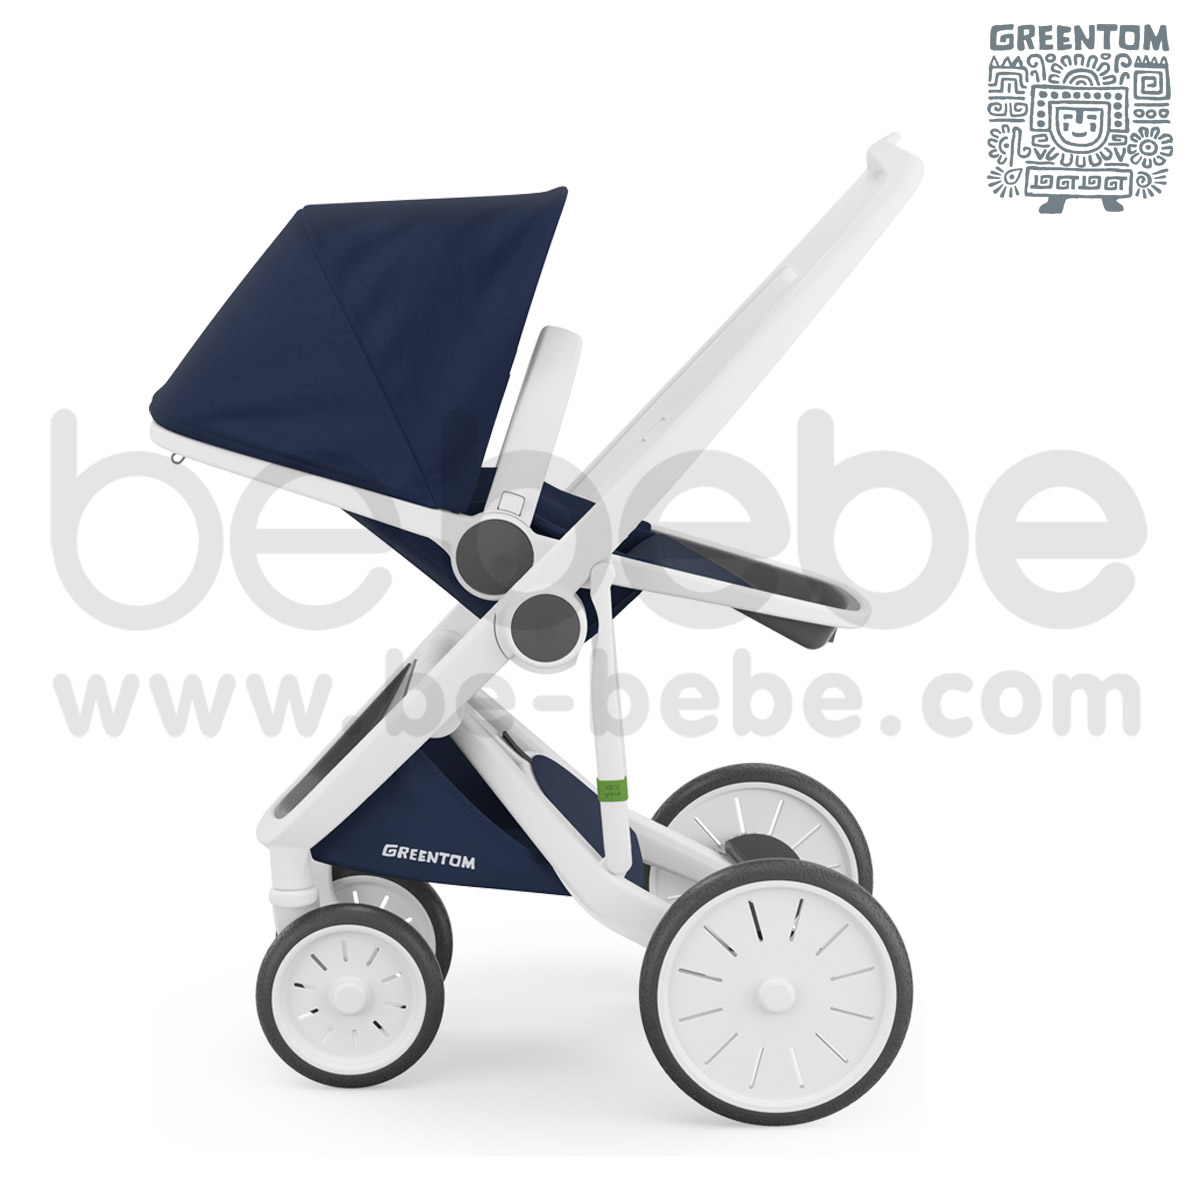 Greentom : Revesible White Frame Stroller - Blue 